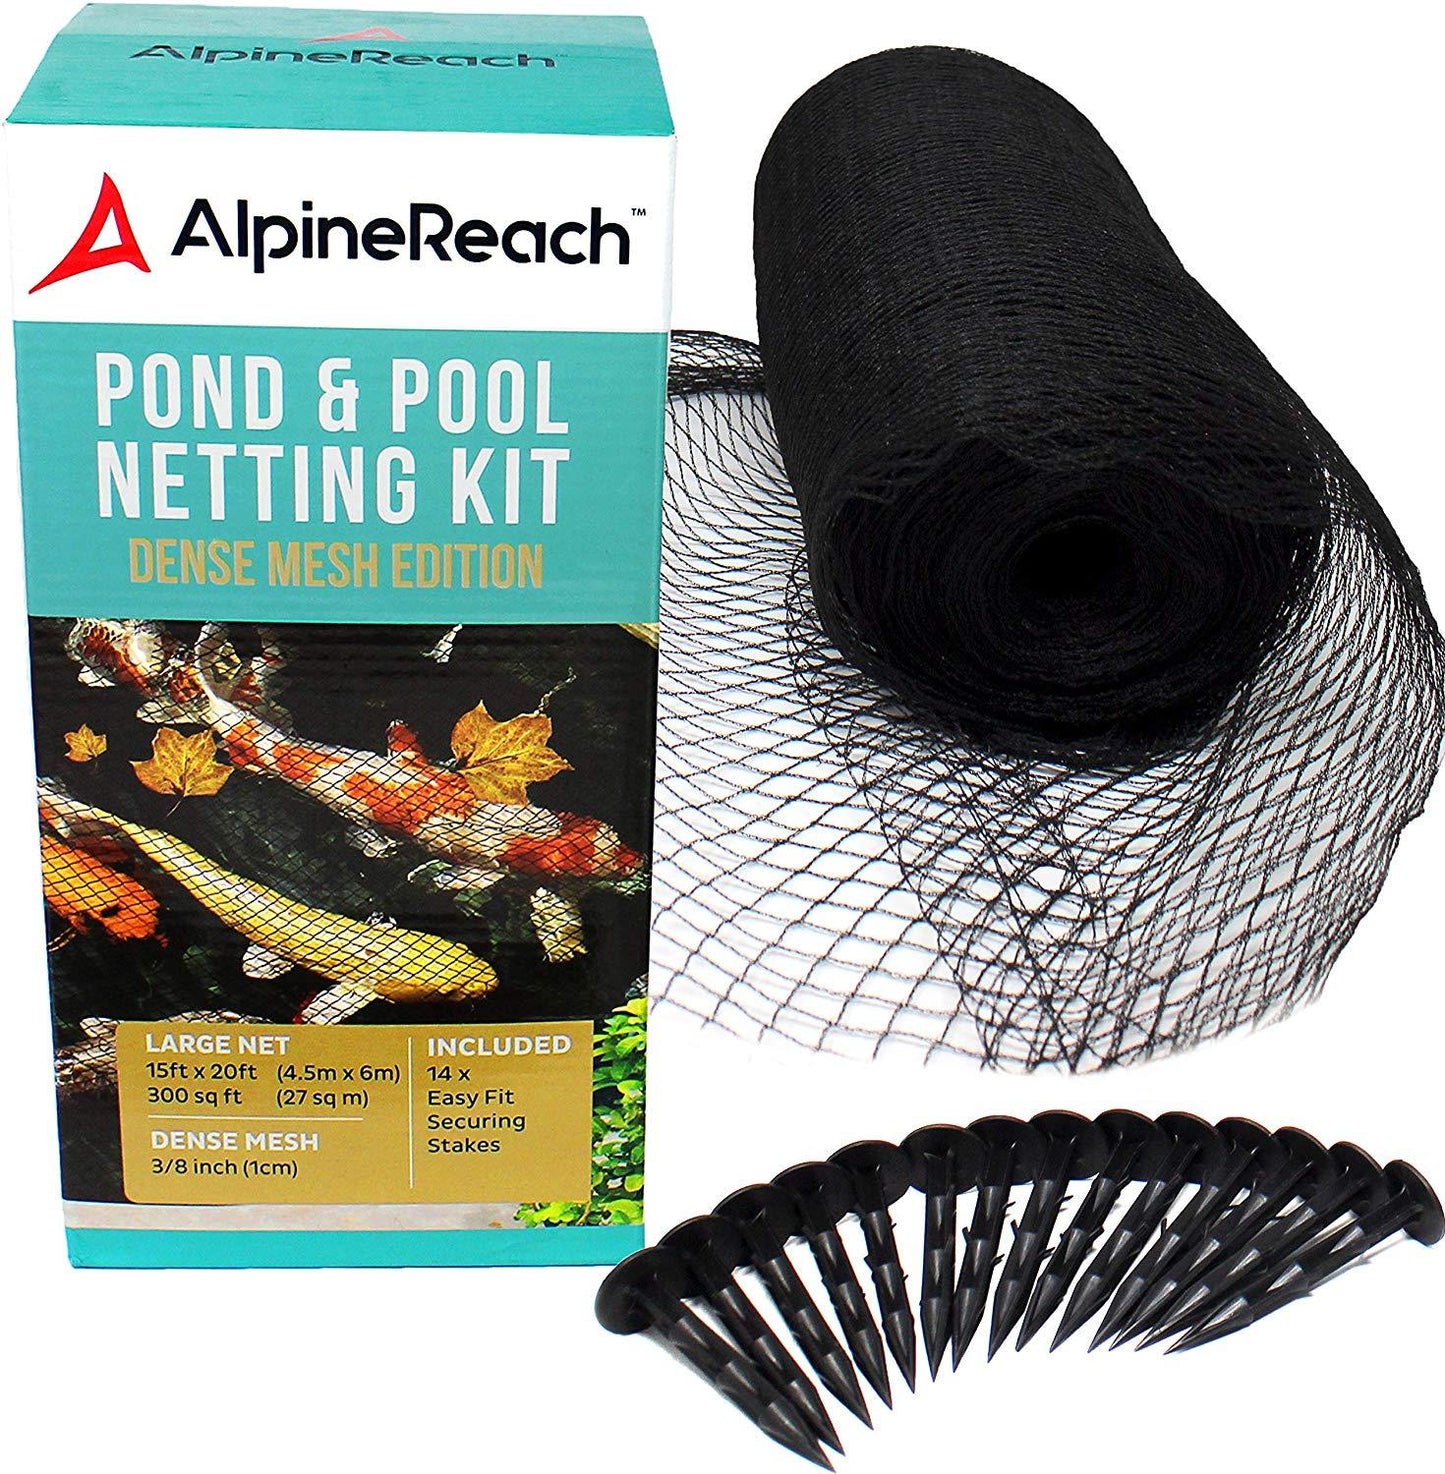 AlpineReach 15 x 20 Feet Koi Pond Netting Kit - AlpineReach